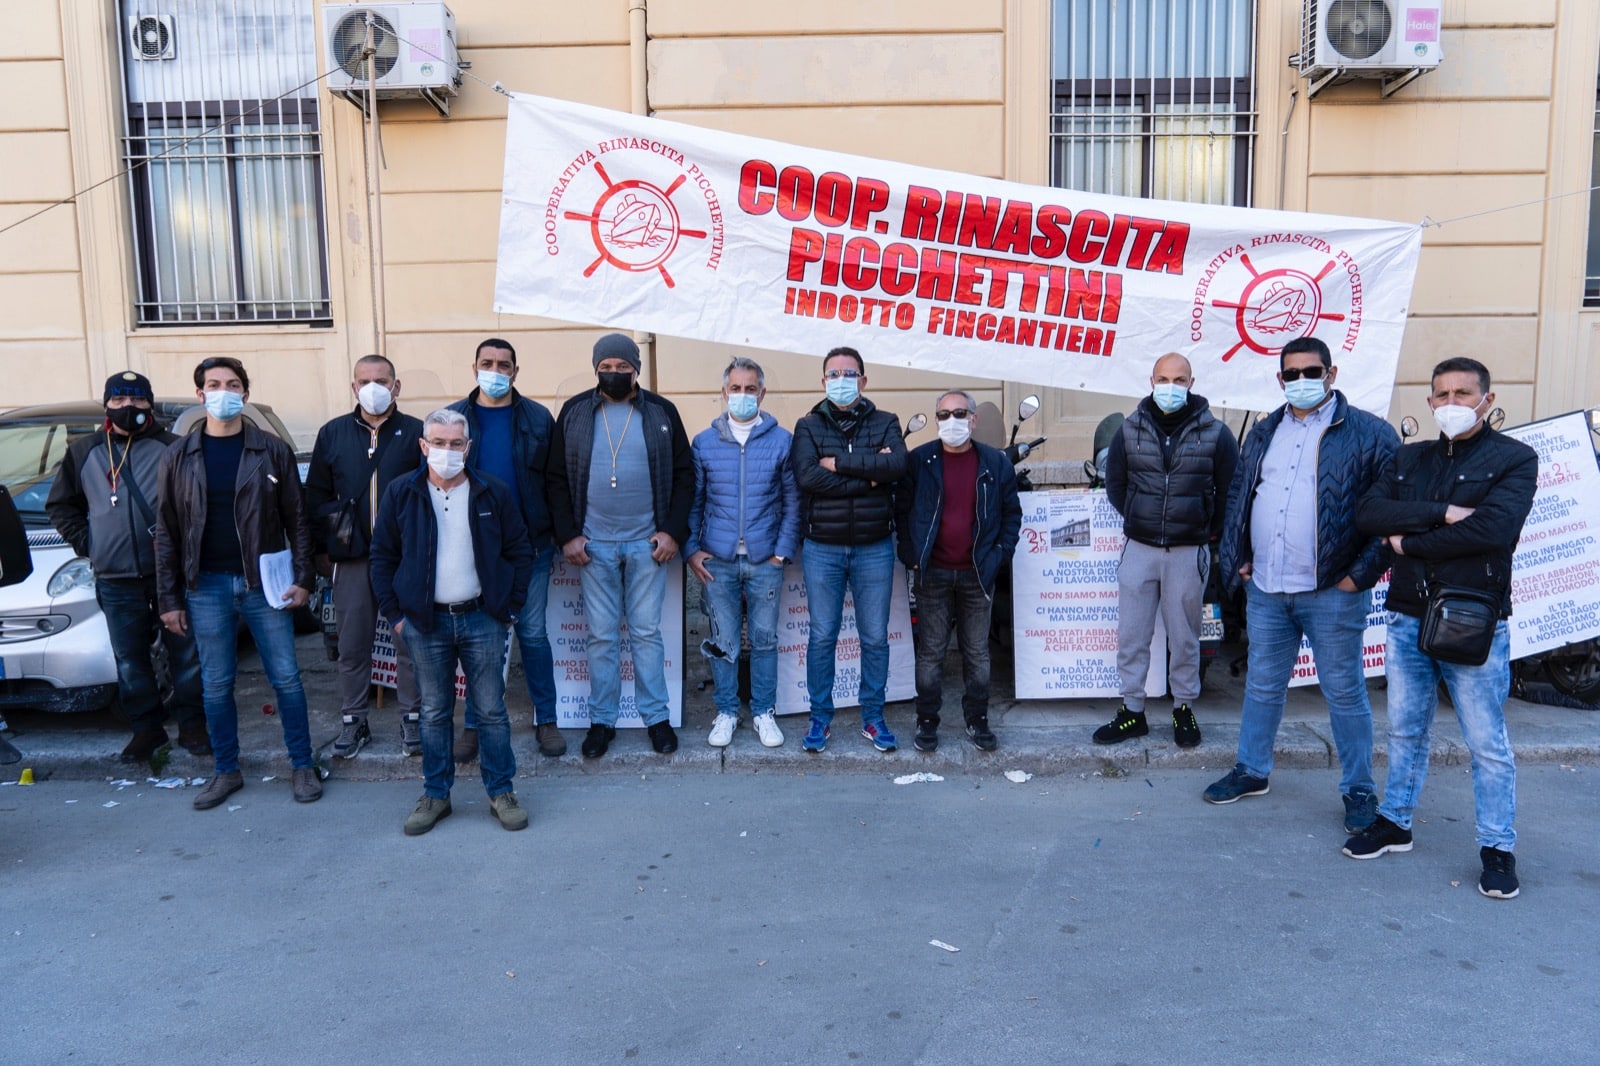 Palermo, la rabbia dei lavoratori della Picchettini: “Abbandonati da tutti”